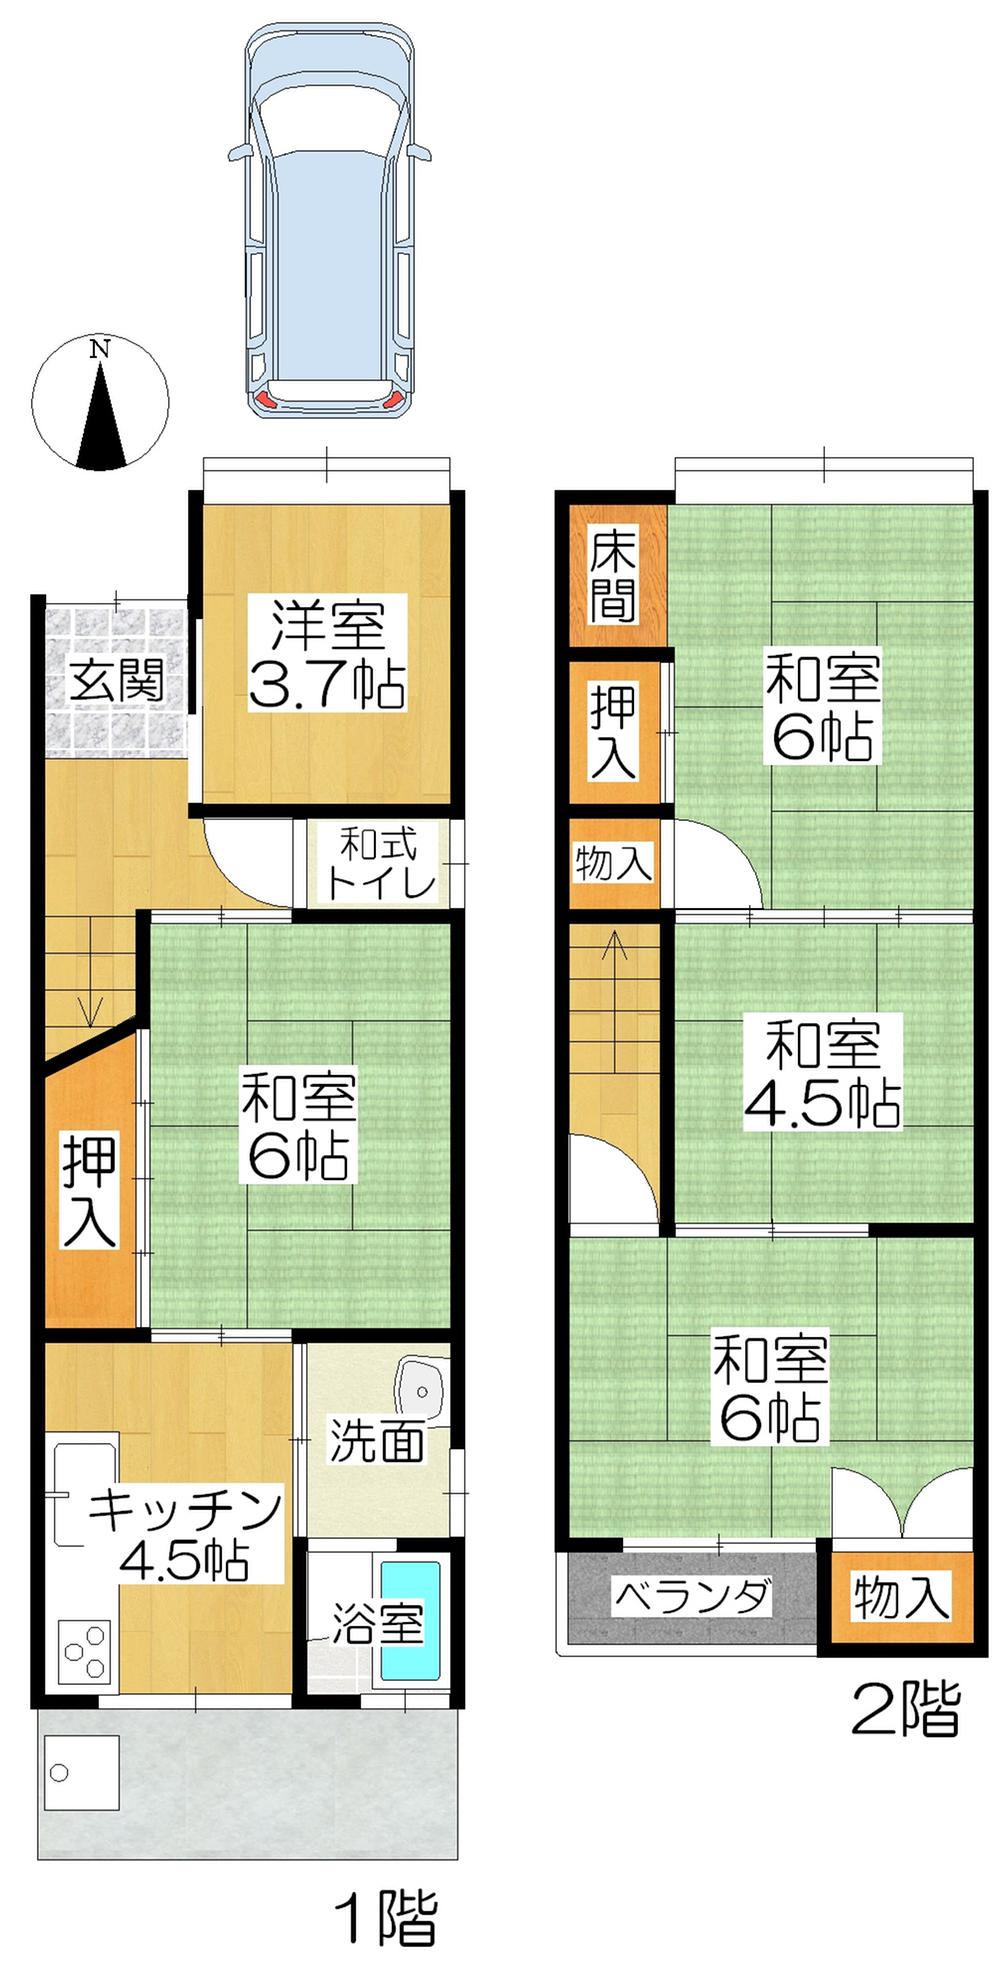 Floor plan. 17 million yen, 5K, Land area 63.27 sq m , Building area 68.37 sq m